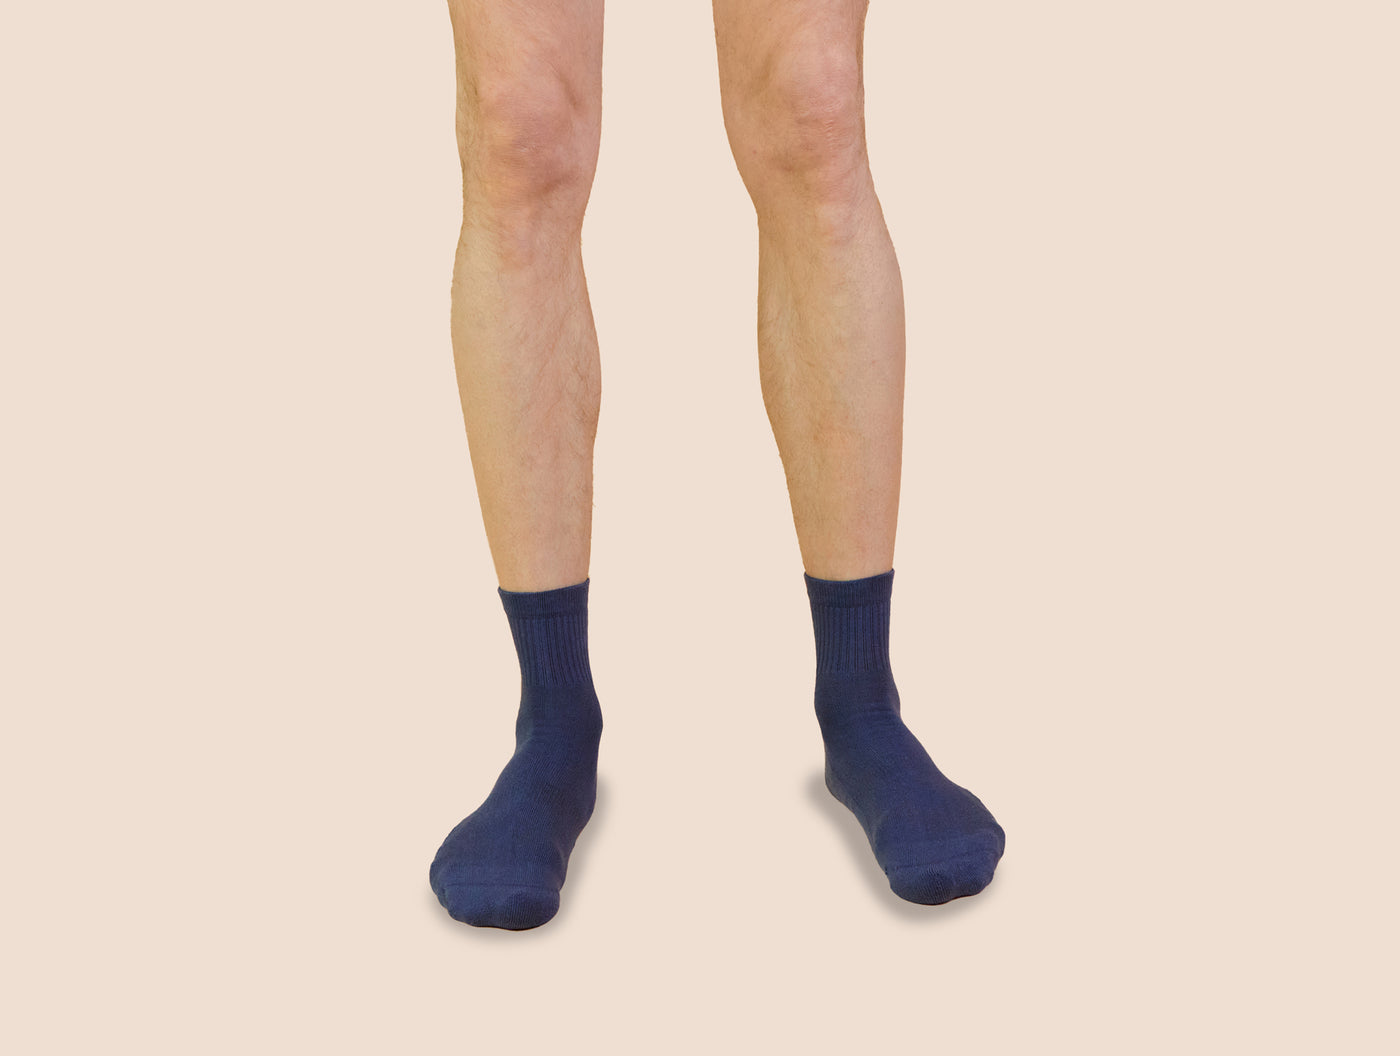 Petrone-chaussettes-tennis-coton-bio-unies-basses-homme-bleu acier-portées#Couleur_bleu acier